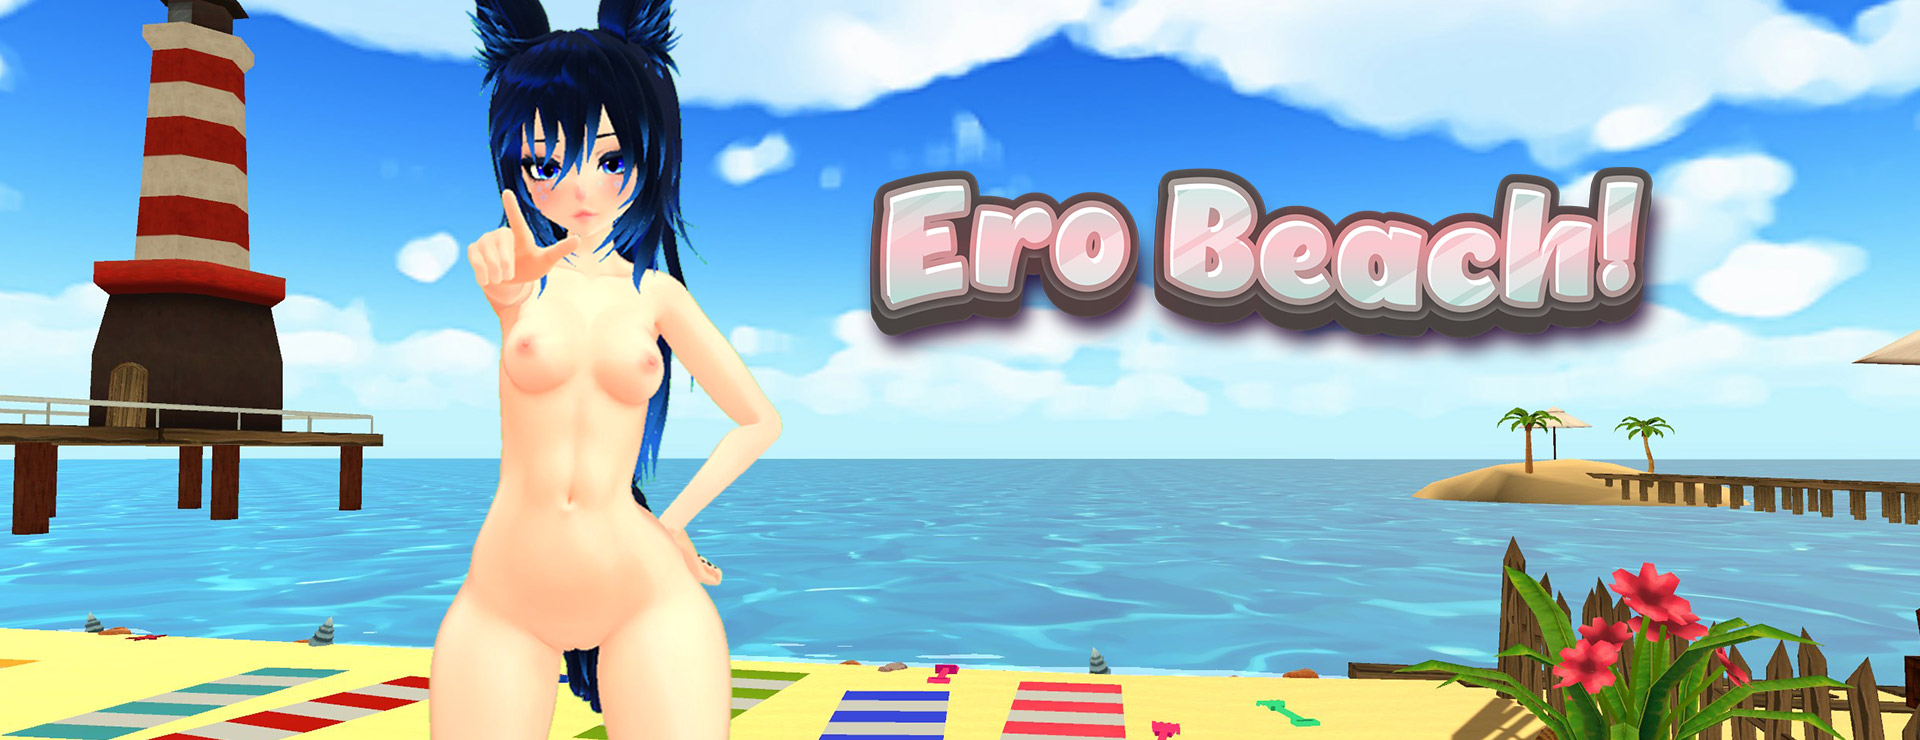 Ero Beach! - Symulacja Gra